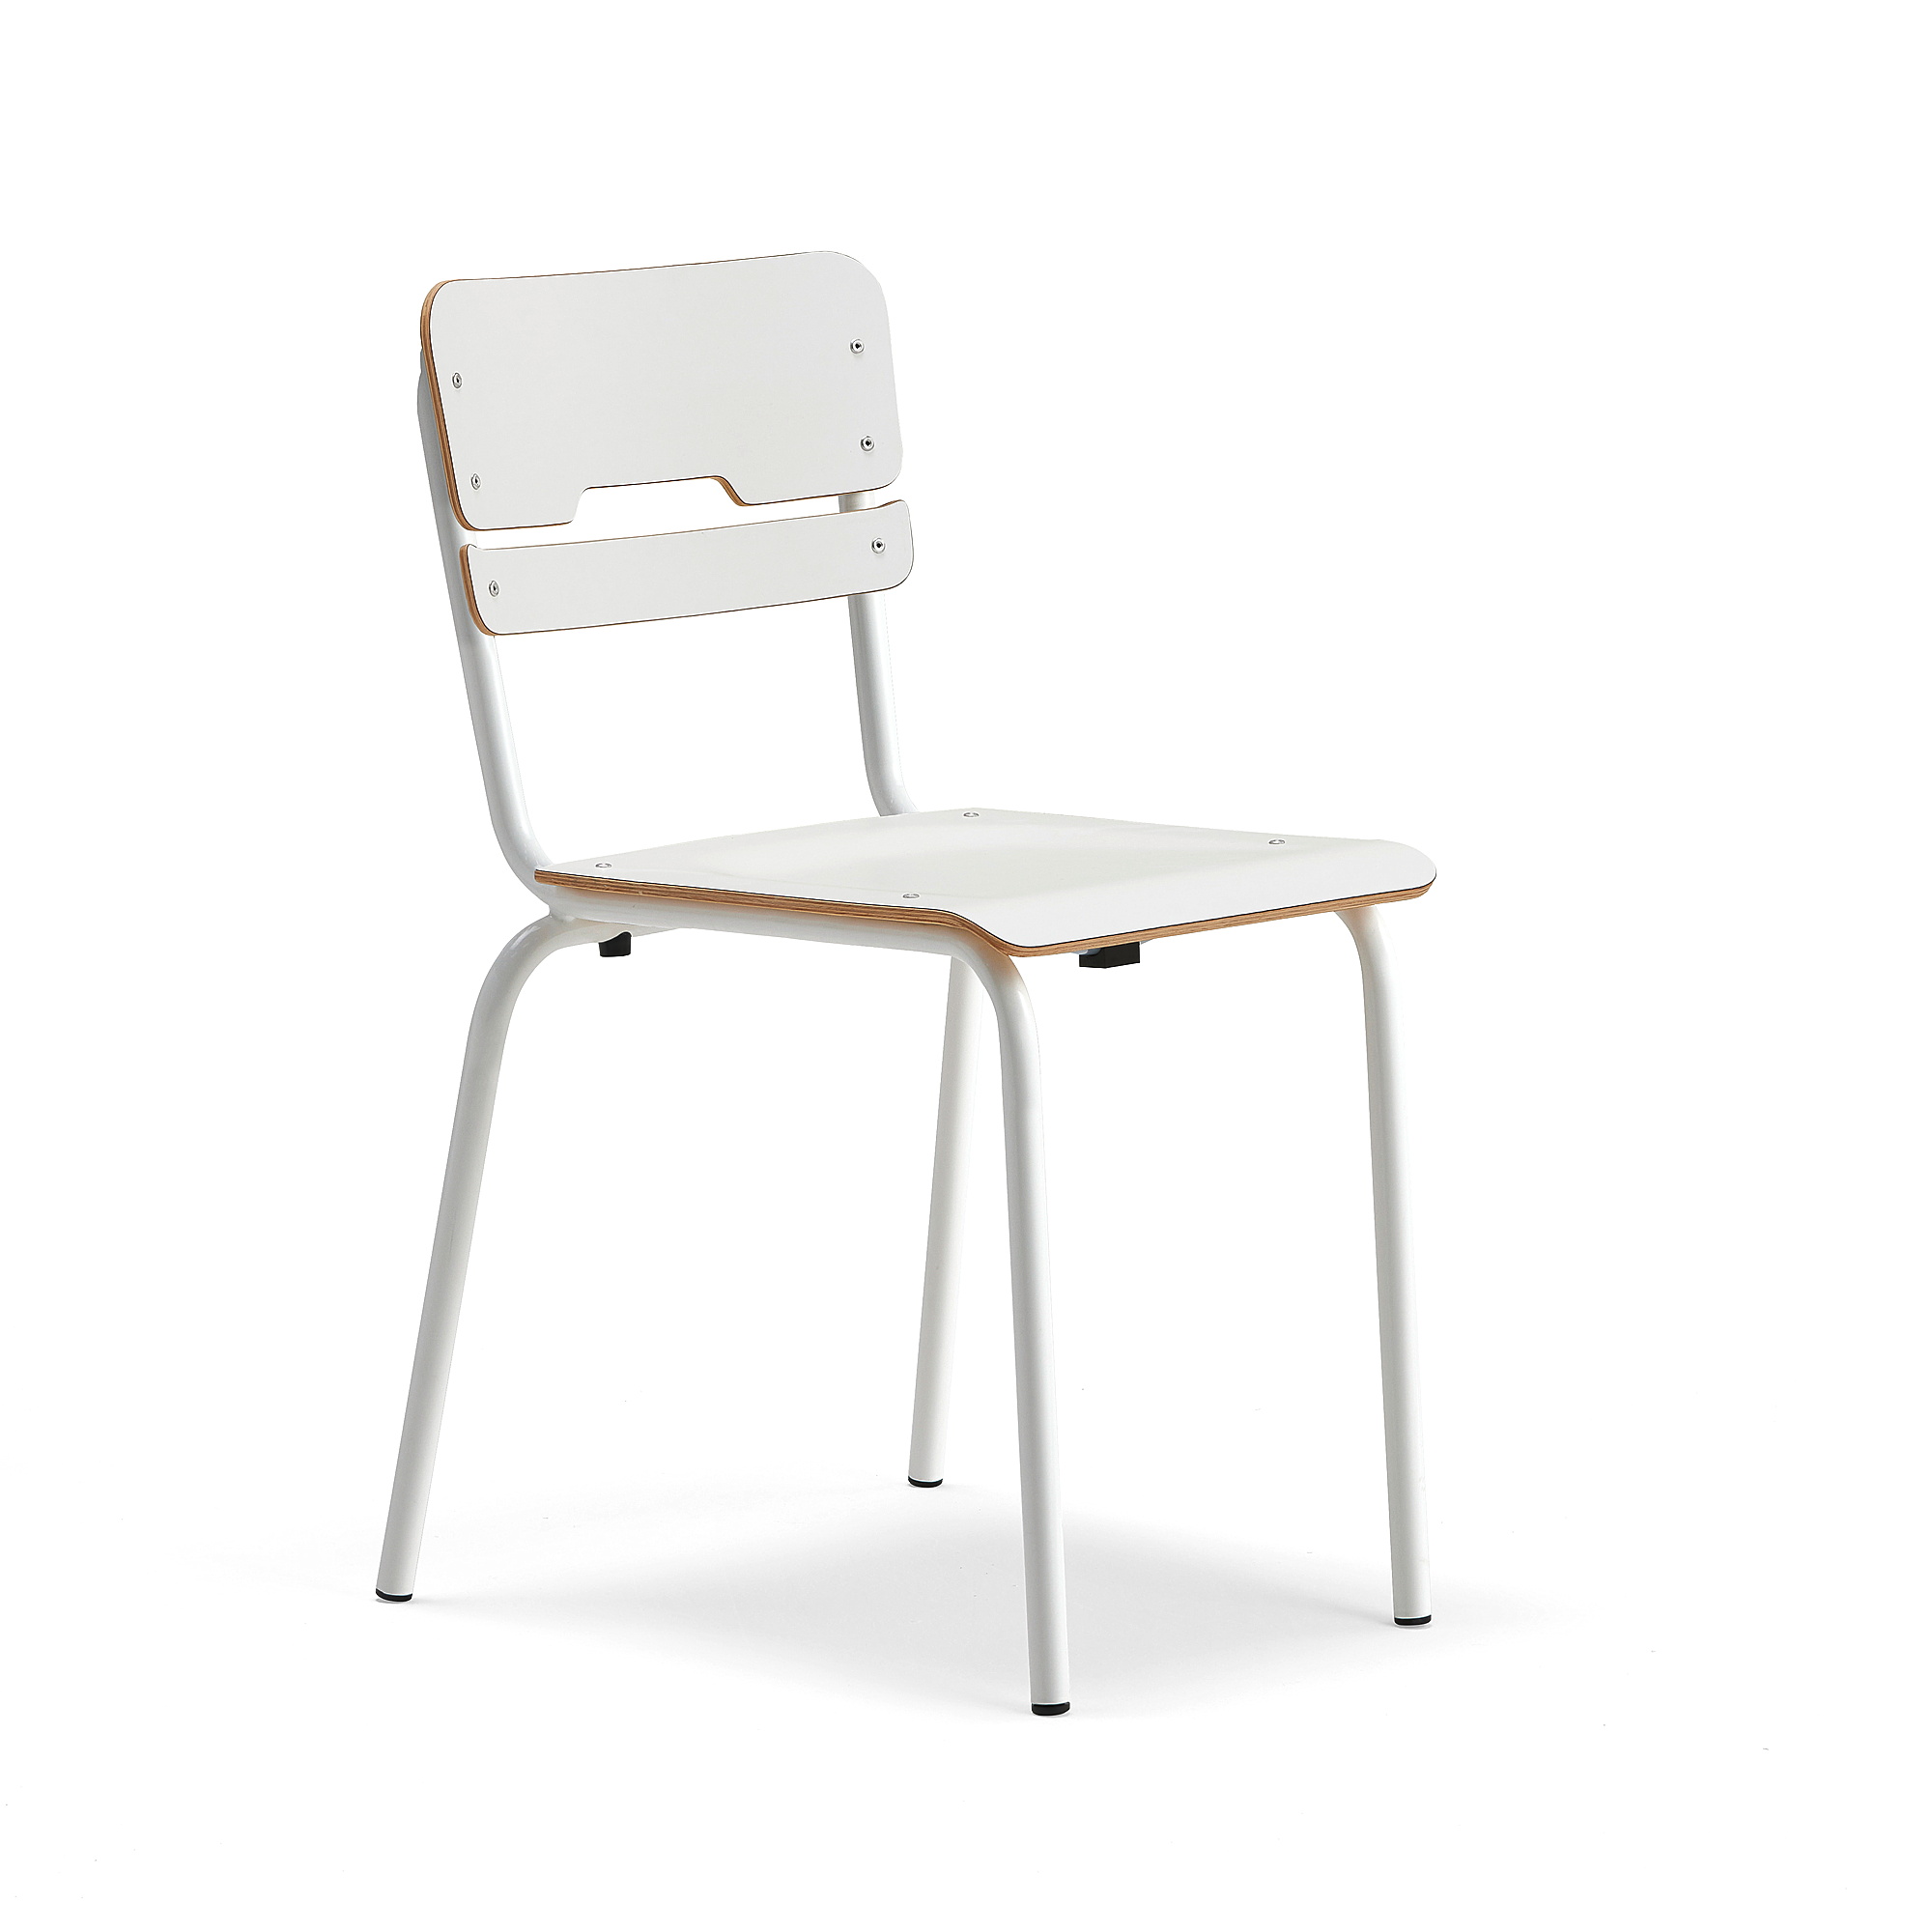 Levně Školní židle SCIENTIA, sedák 390x390 mm, výška 460 mm, bílá/bílá